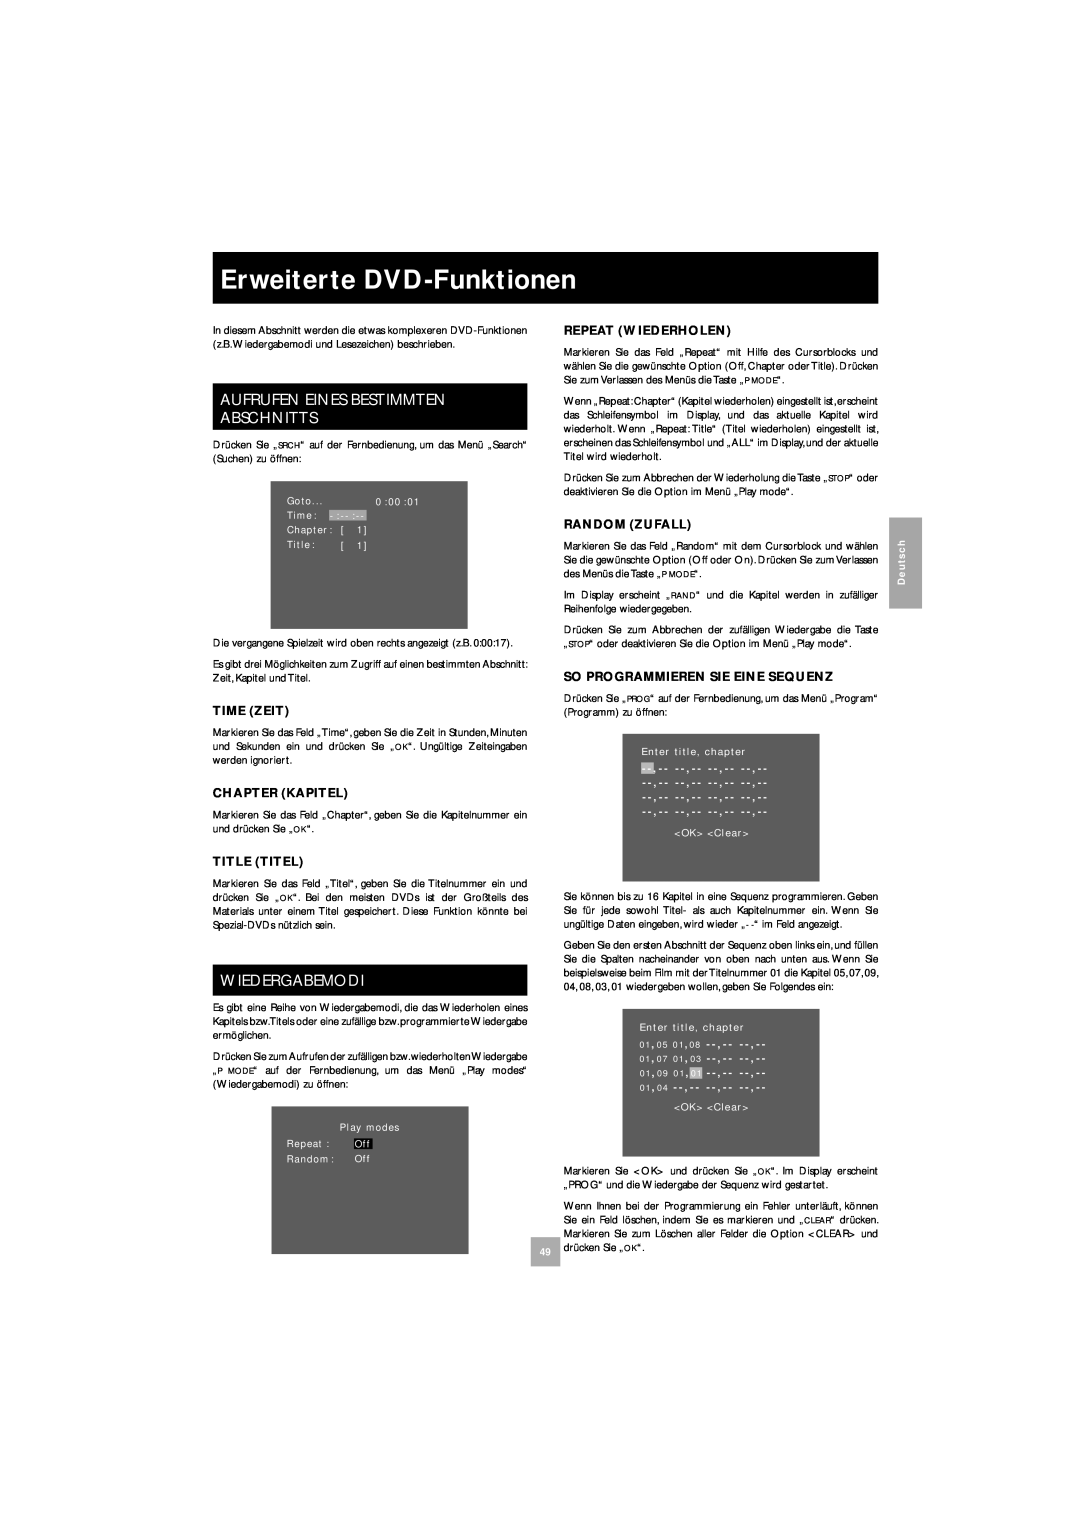 Arcam DV27 manual Erweiterte DVD-Funktionen, Aufrufen Eines Bestimmten Abschnitts, Wiedergabemodi 